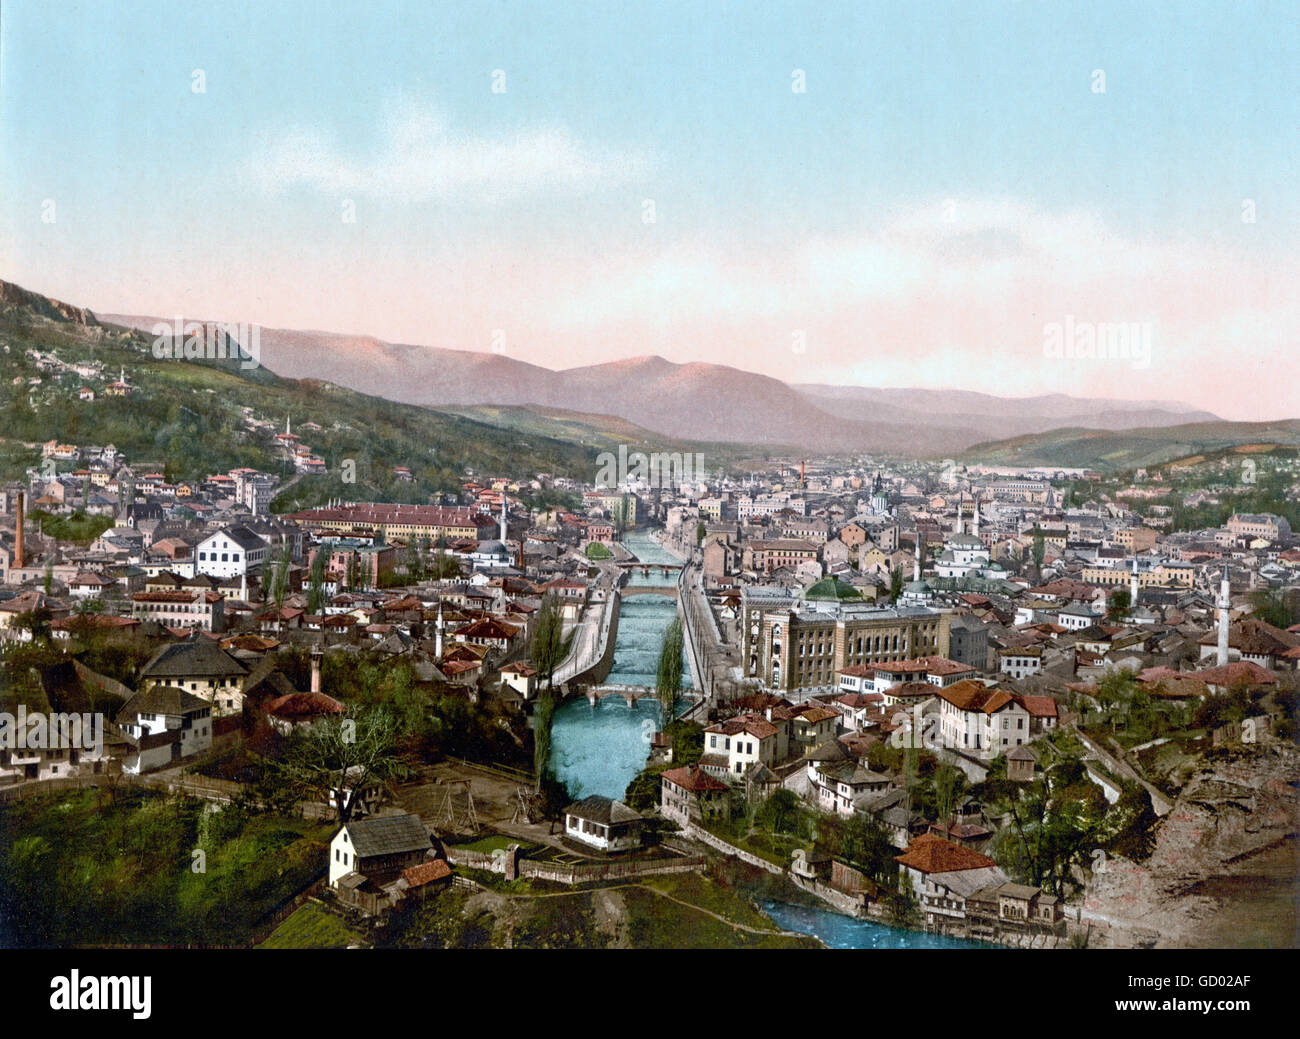 Vue sur le nord de Sarajevo à la fin du 19ème siècle, c.1890-1900 impression photochrome. Banque D'Images